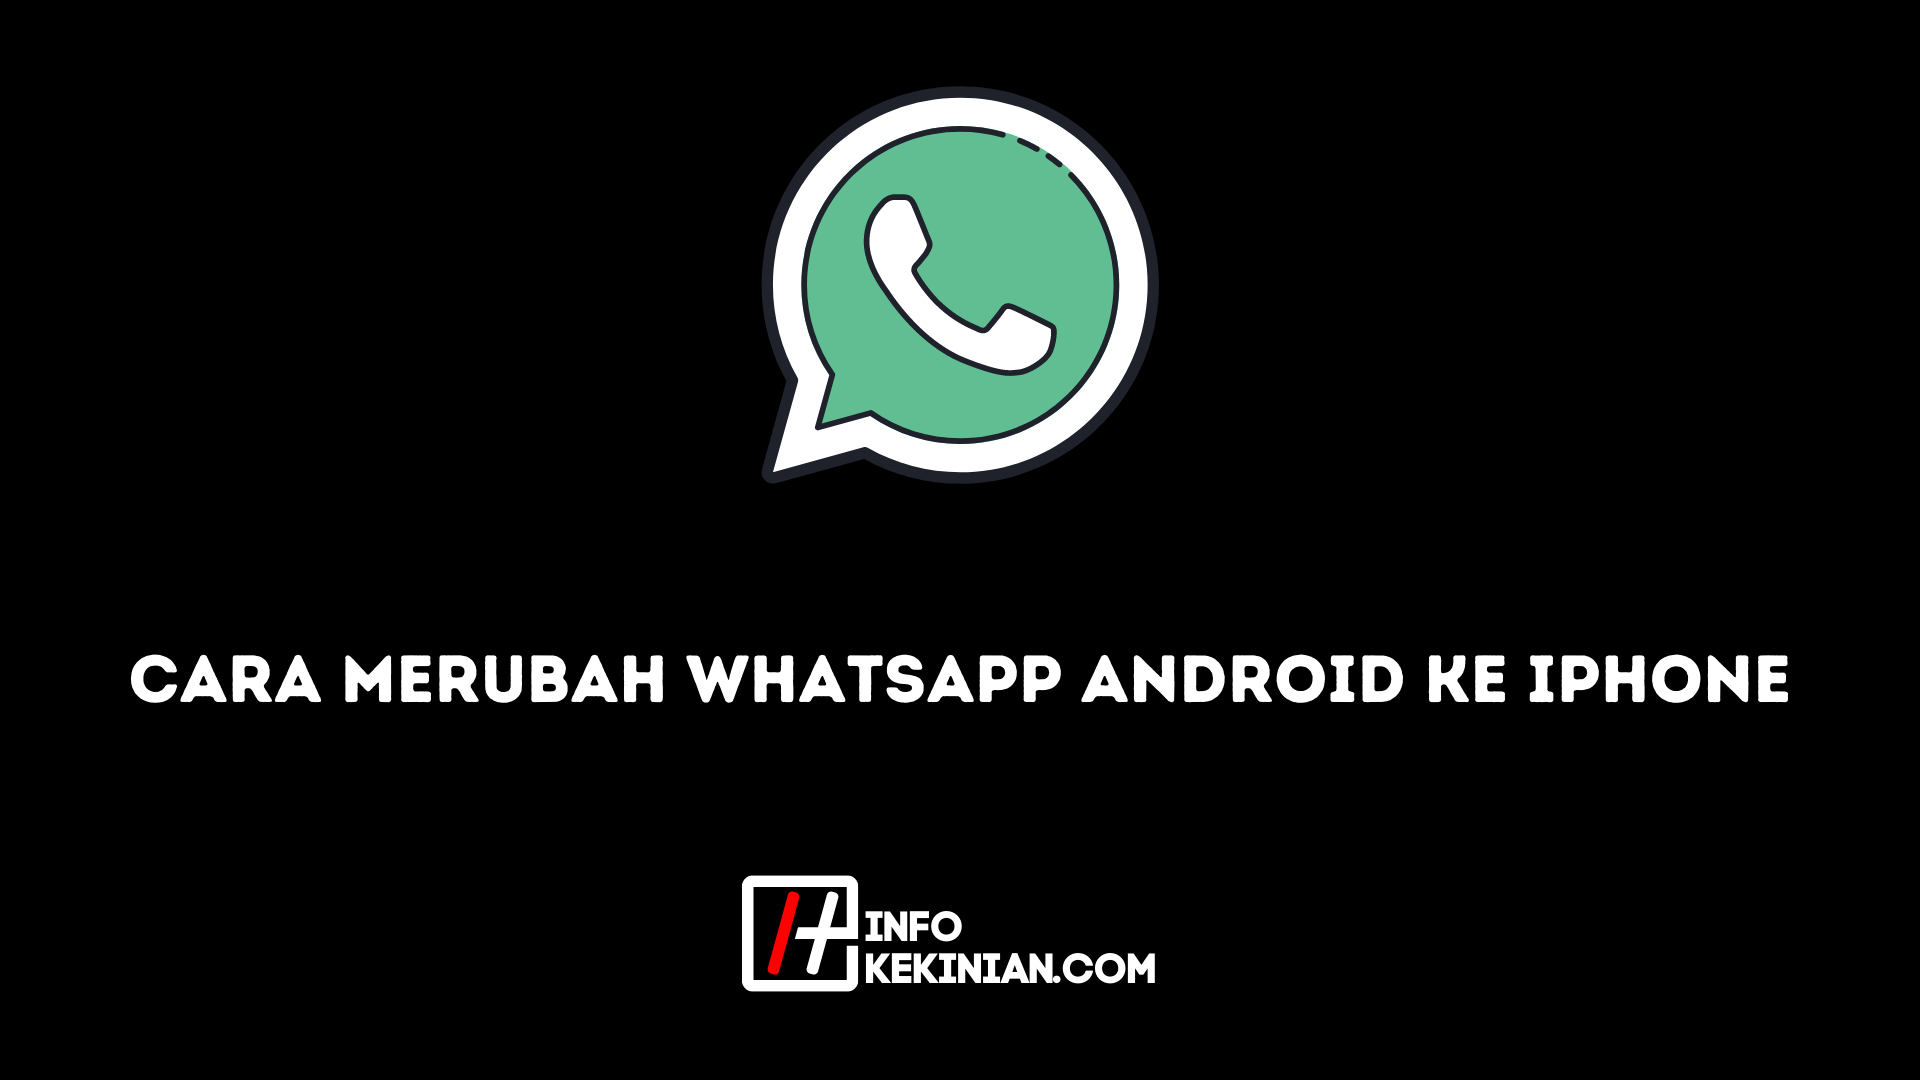 Cara Merubah WhatsApp Android ke Iphone